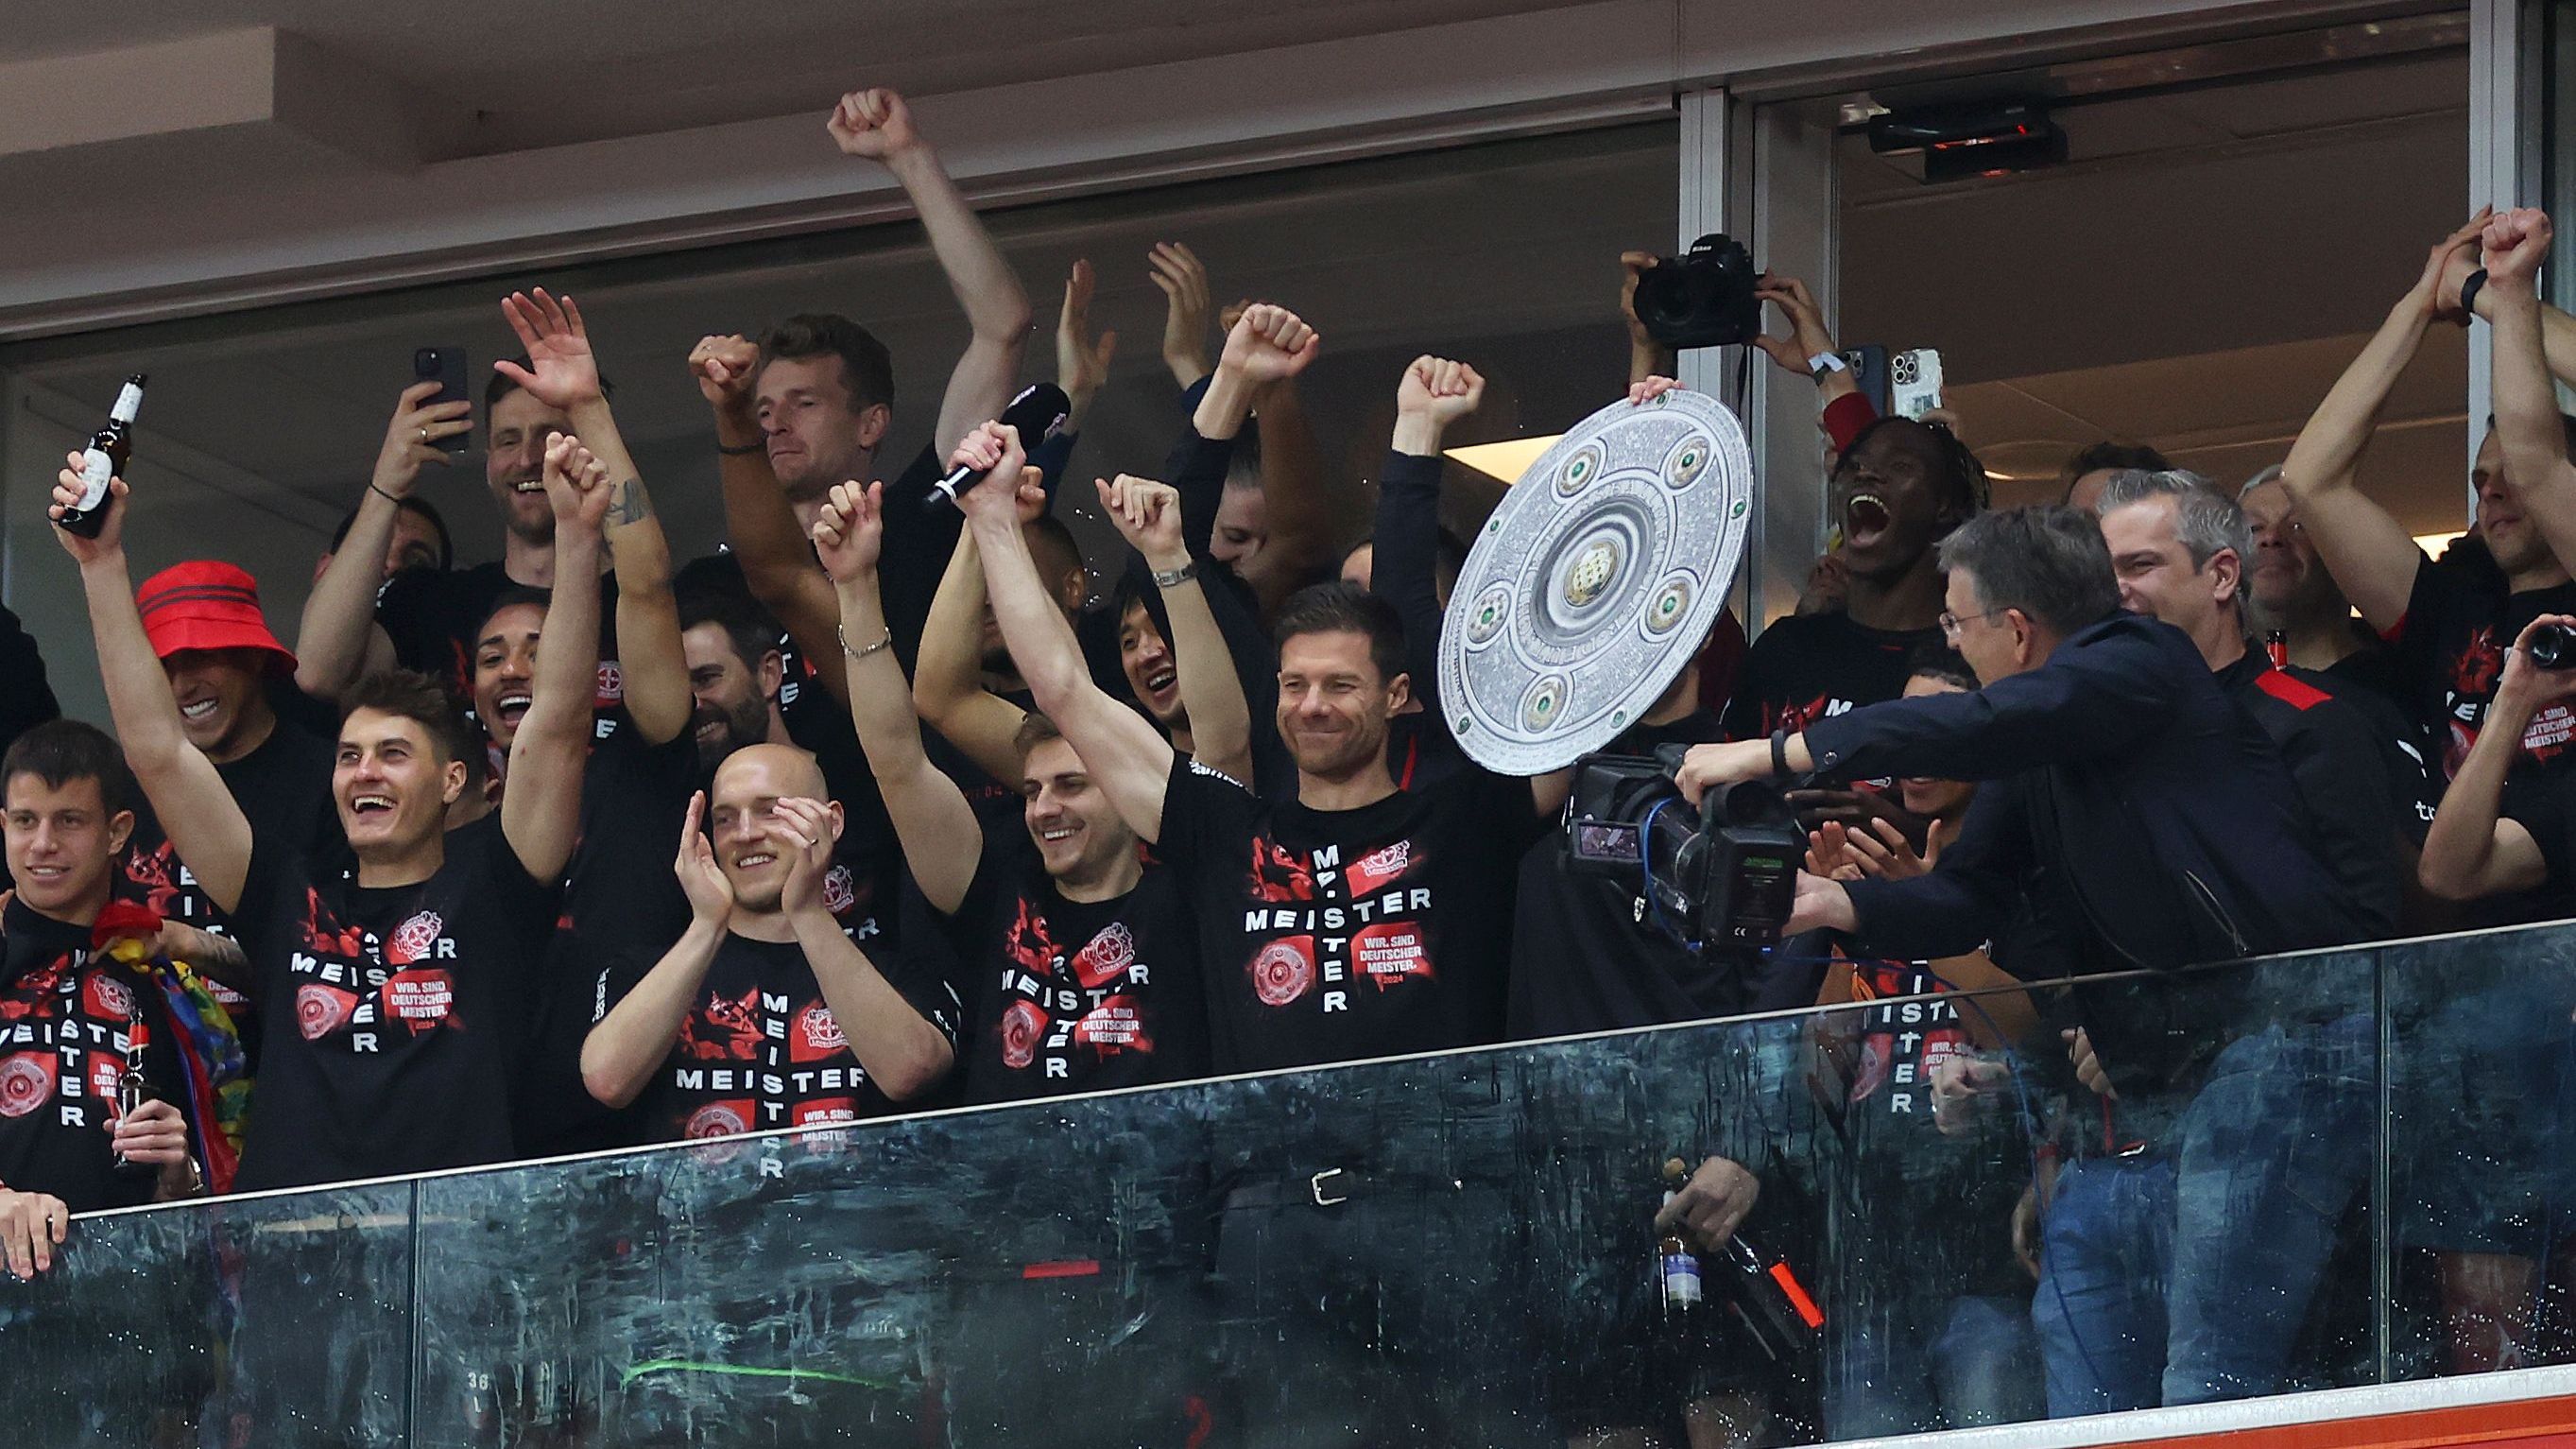 <strong>Bayer Leverkusen: Die besten Bilder der Meisterfeier</strong><br>Während oben auf der Tribüne die Mannschaft feiert ...